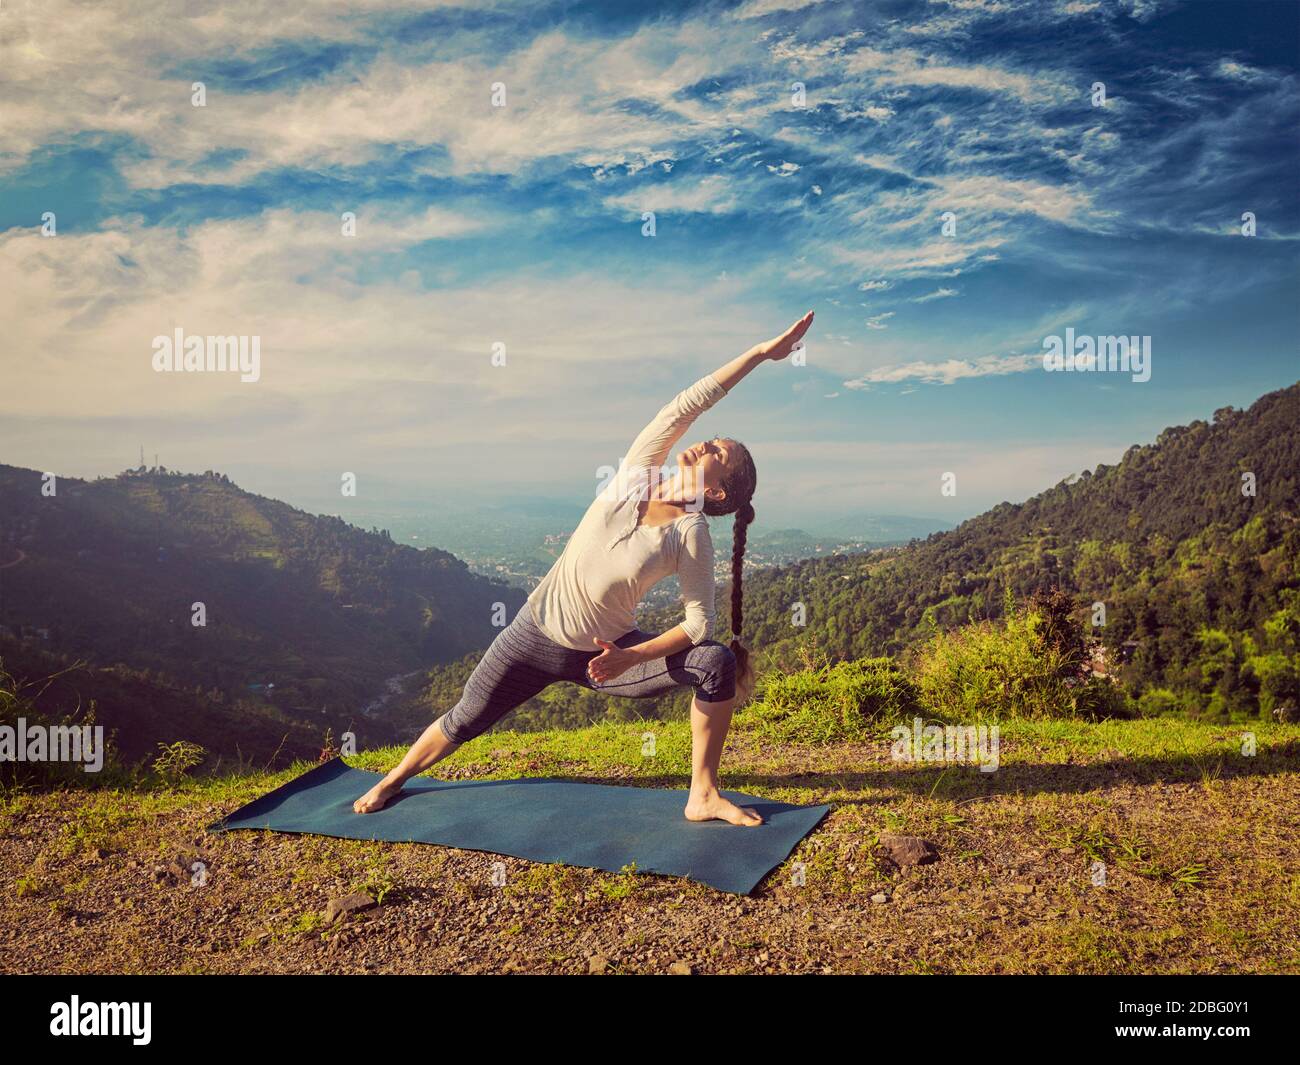 Vintage rétro effet hipster image de style sportif femme Pratiques yoga asana Utthita Parsvakonasana - posture latérale prolongée extérieur dans le support Banque D'Images